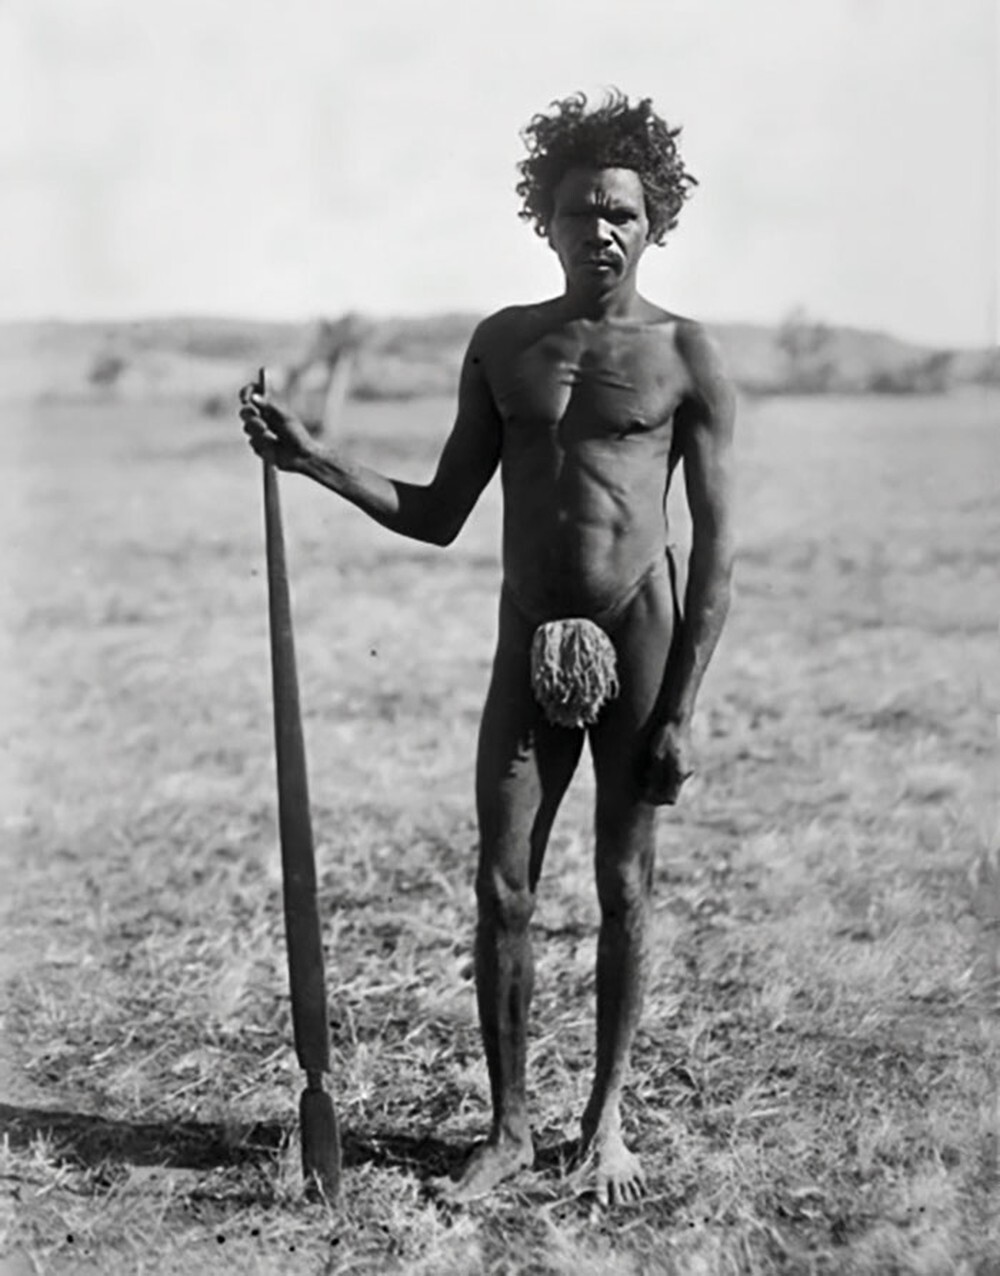 20. Мужчина из народа вардаман с копьеметателкой северо-западного типа. Северная территория Австралии